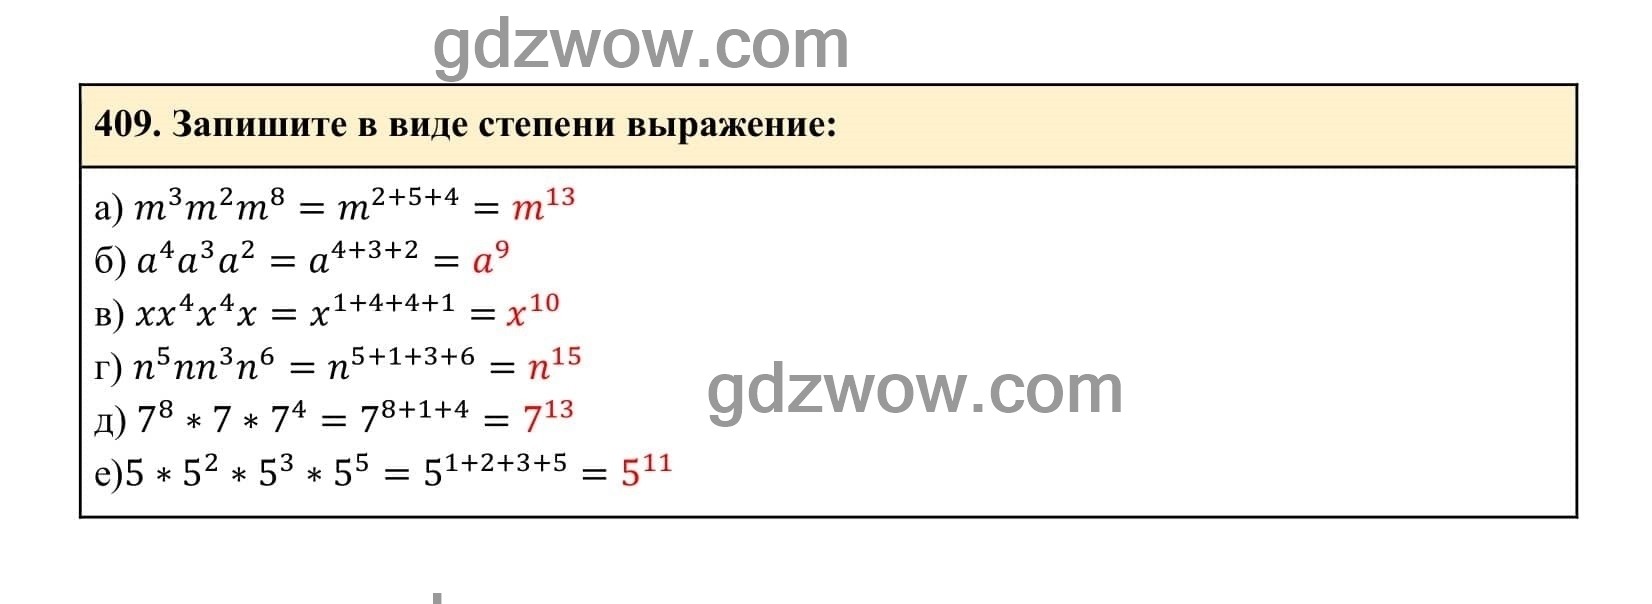 Упражнение 409 - ГДЗ по Алгебре 7 класс Учебник Макарычев (решебник) - GDZwow